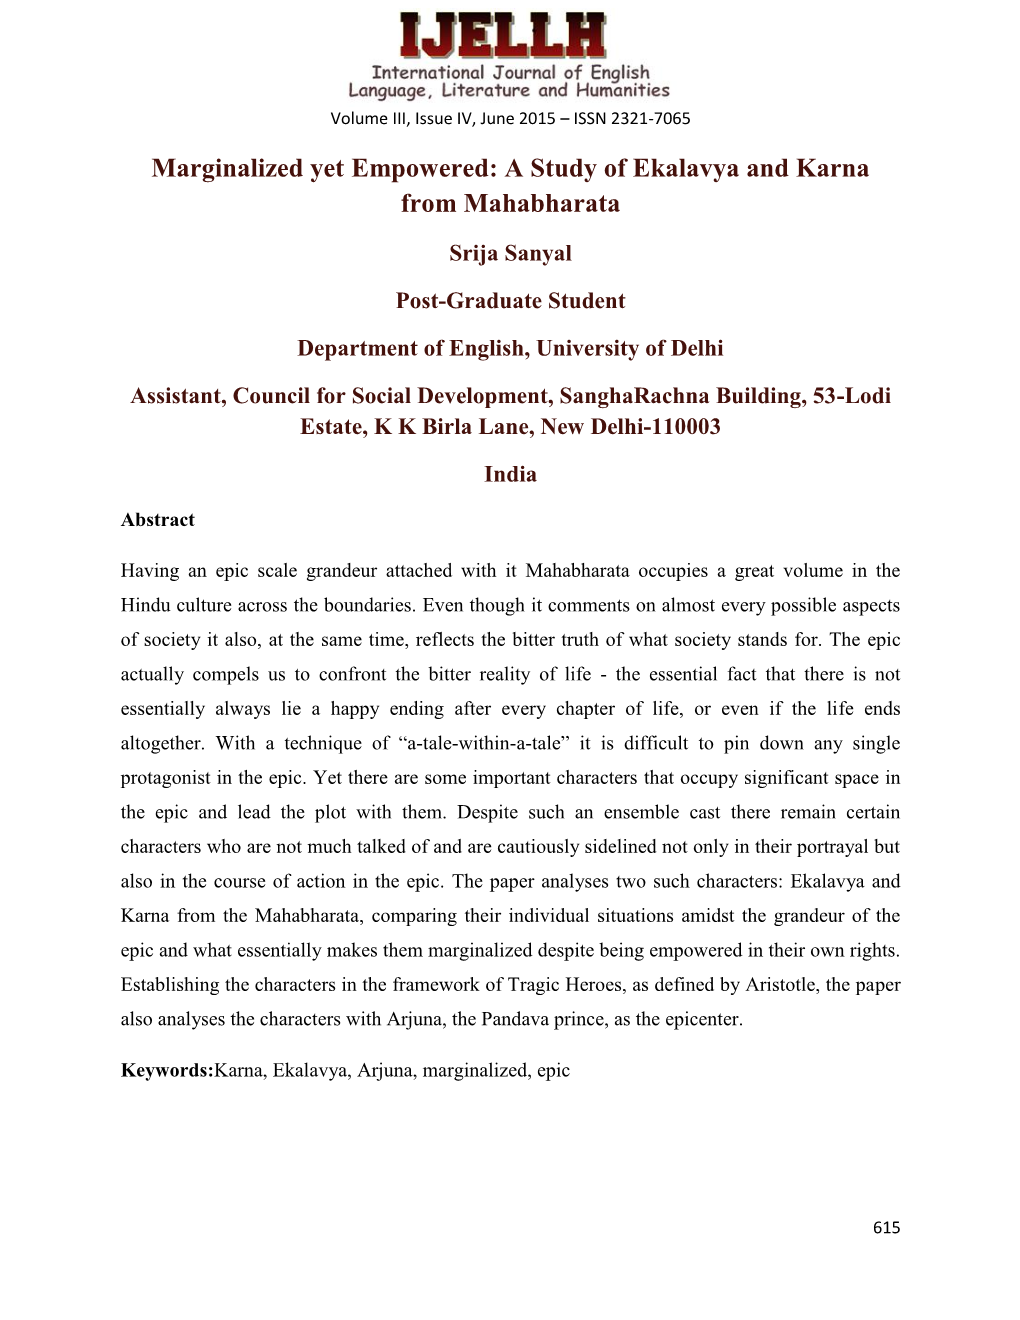 A Study of Ekalavya and Karna from Mahabharata